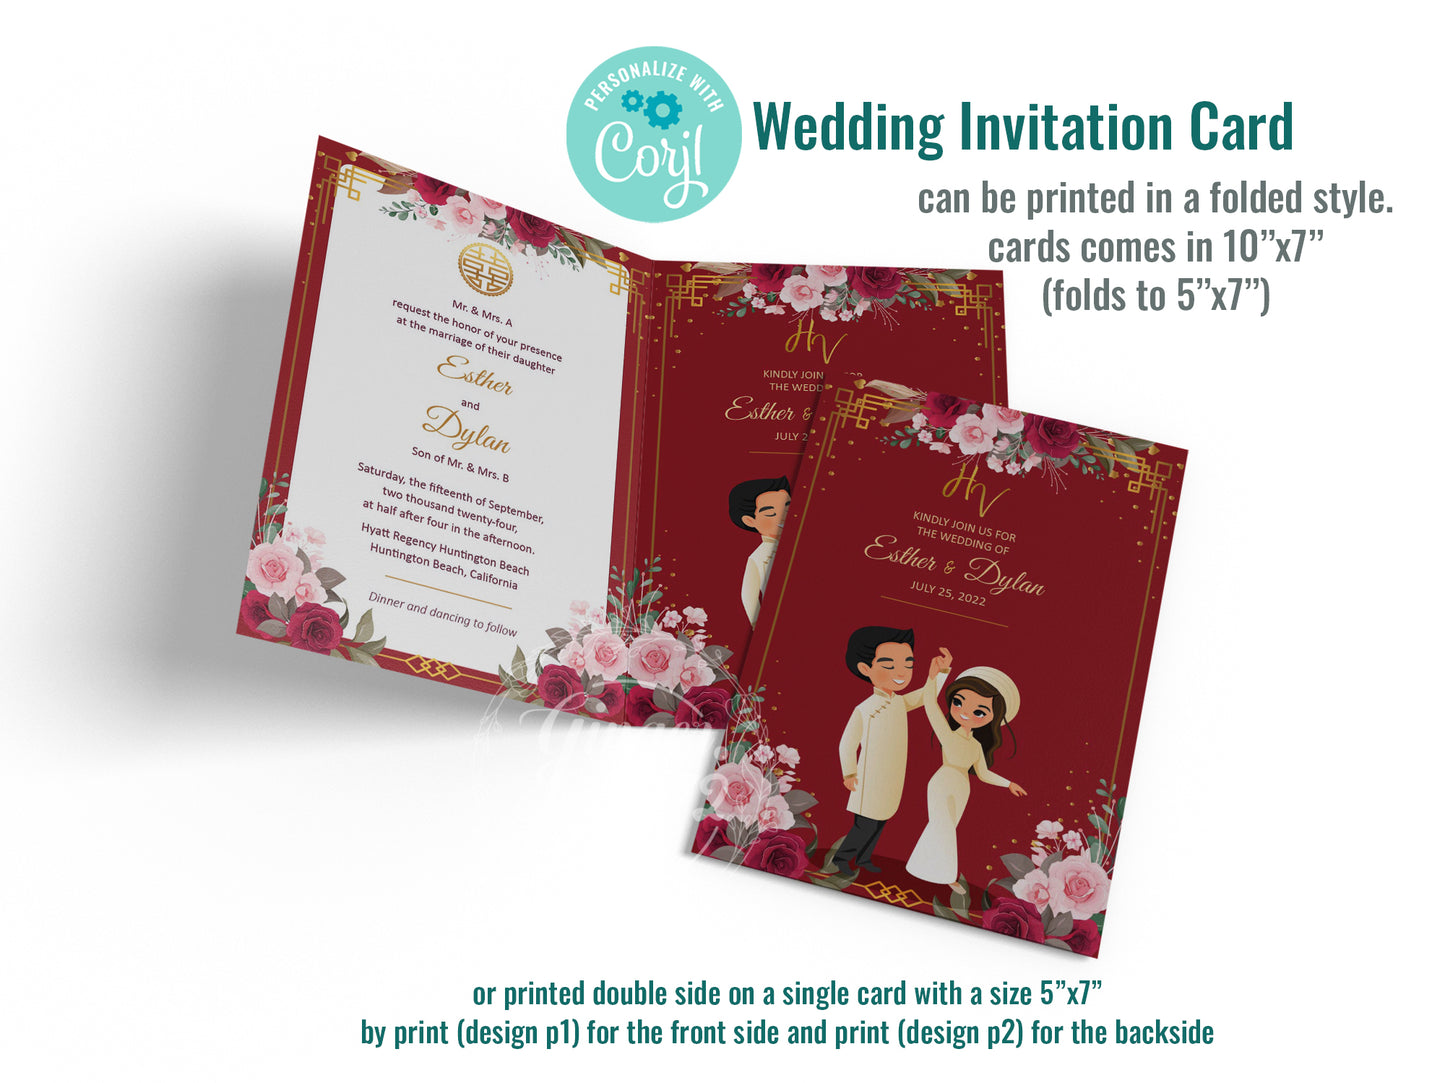 Cute Vietnamese wedding invite, Áo dài theme, Customize Invite Template #cvwl220202